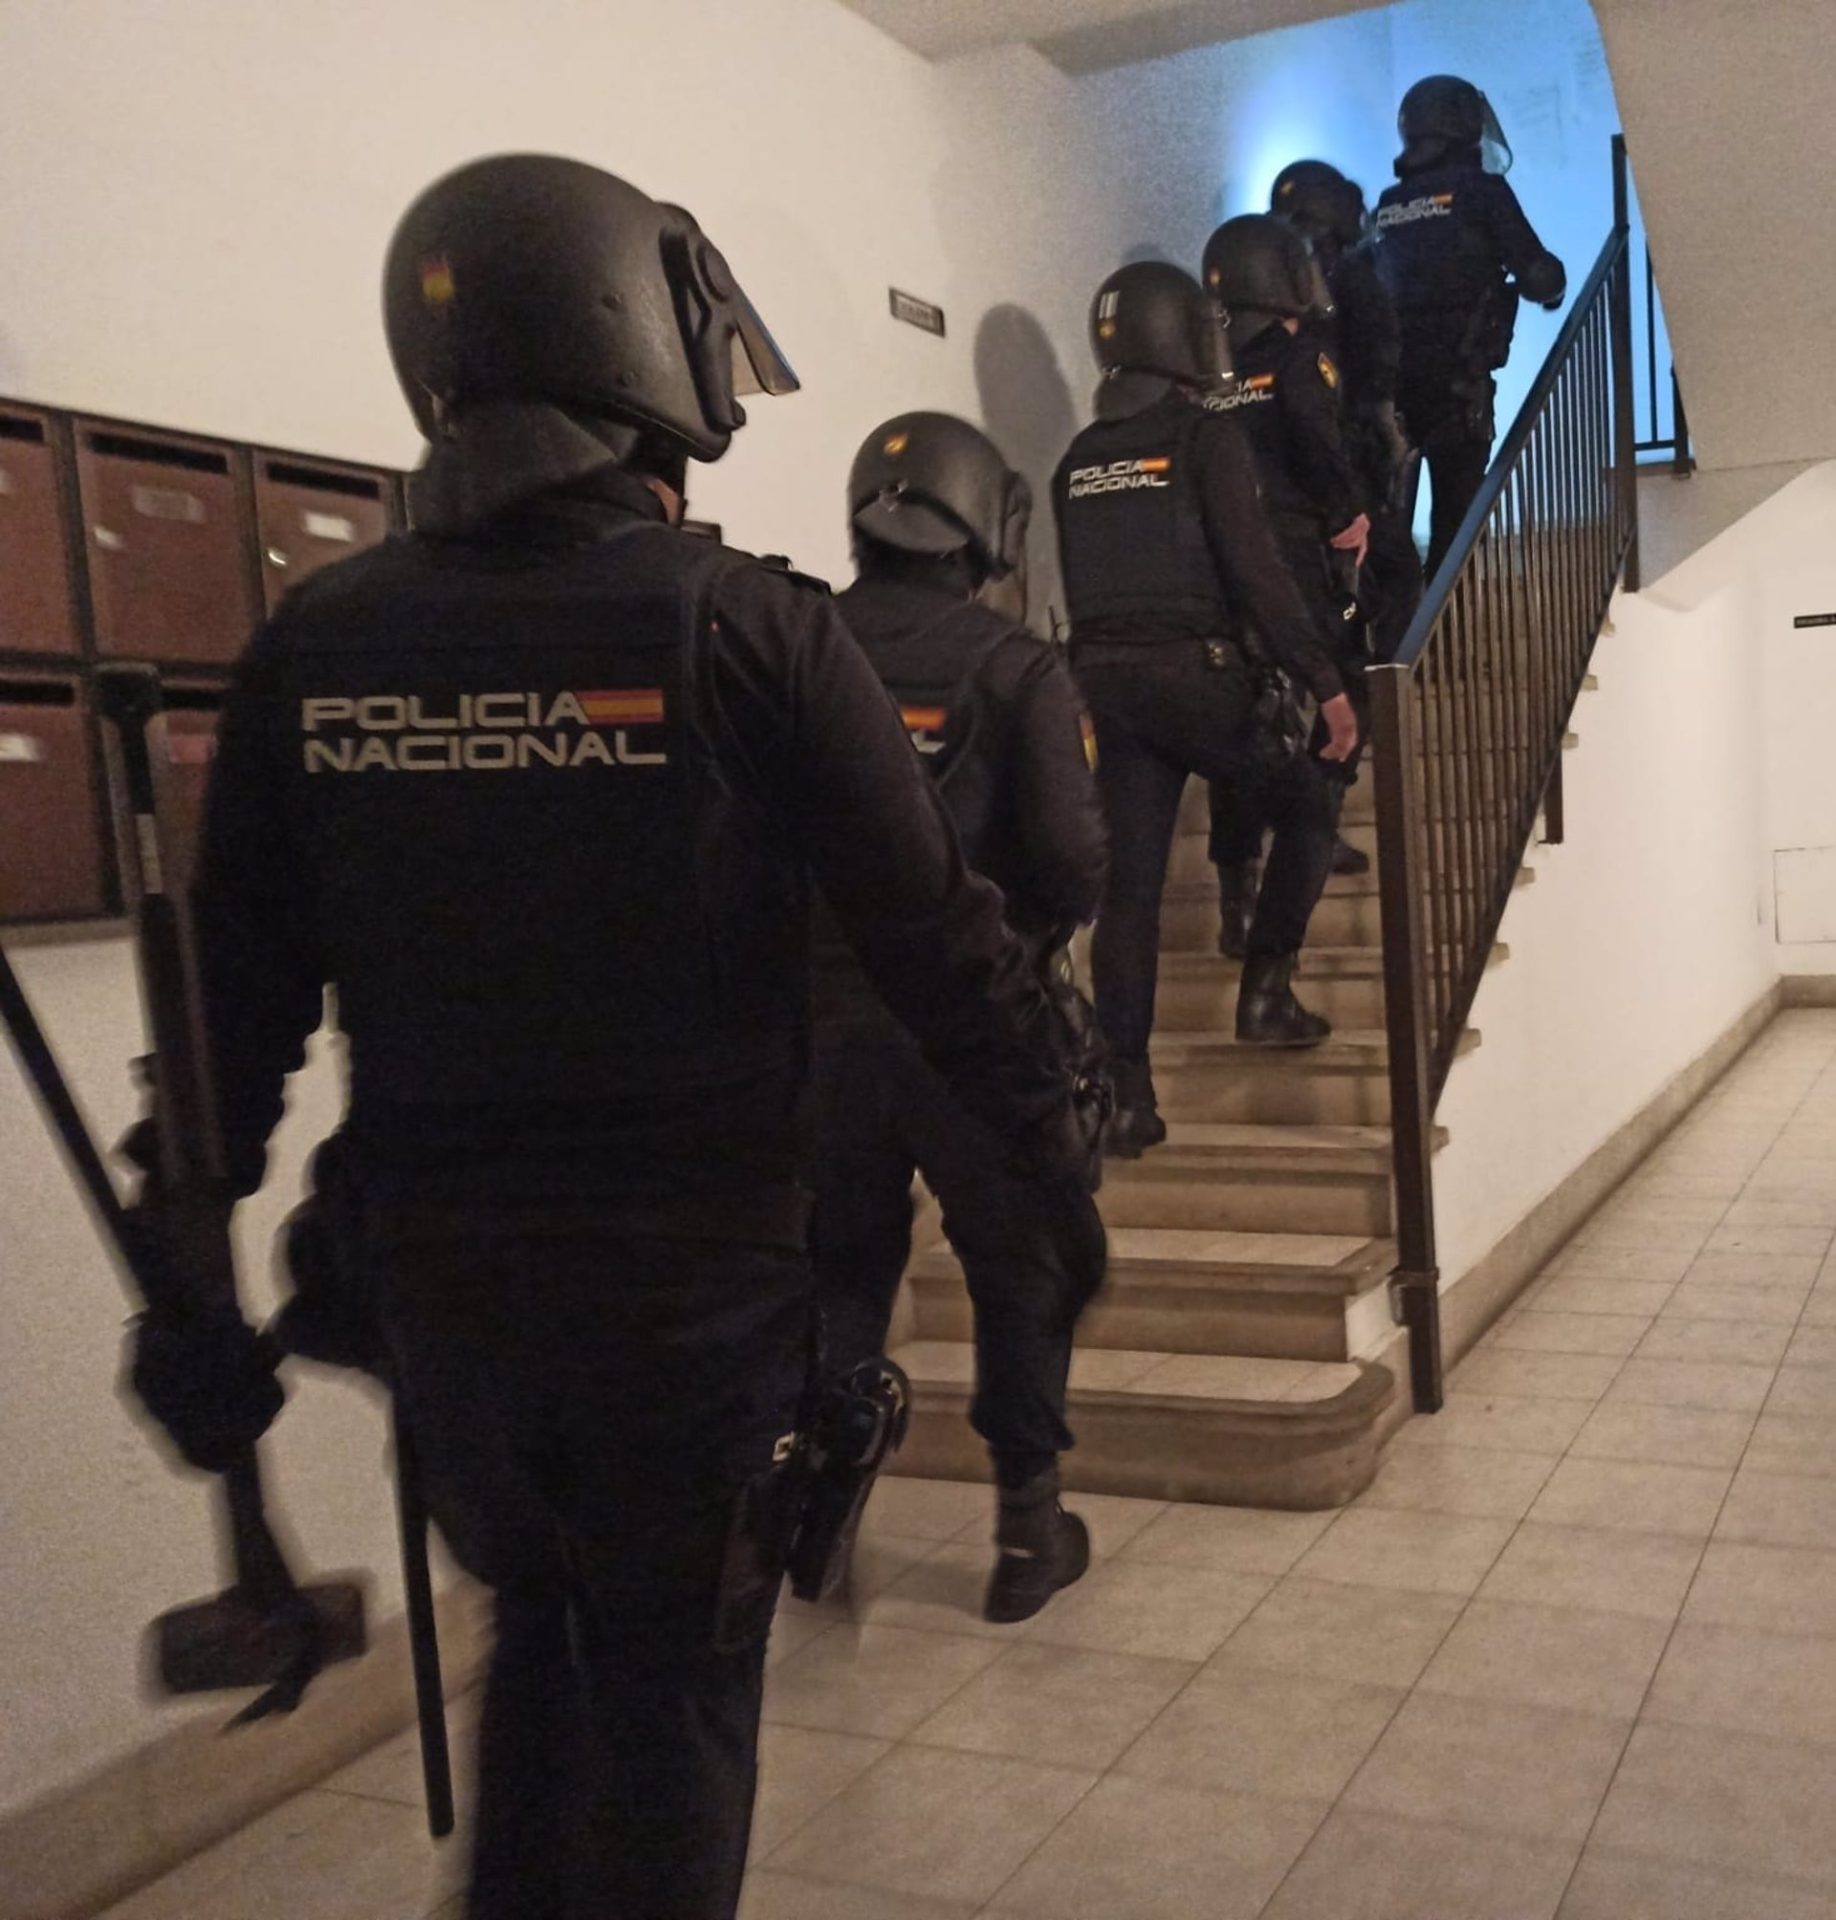 Agentes de la Policía Nacional detienen a 12 personas en una operación contra el tráfico de drogas en Manacor (Mallorca) - POLICÍA NACIONAL